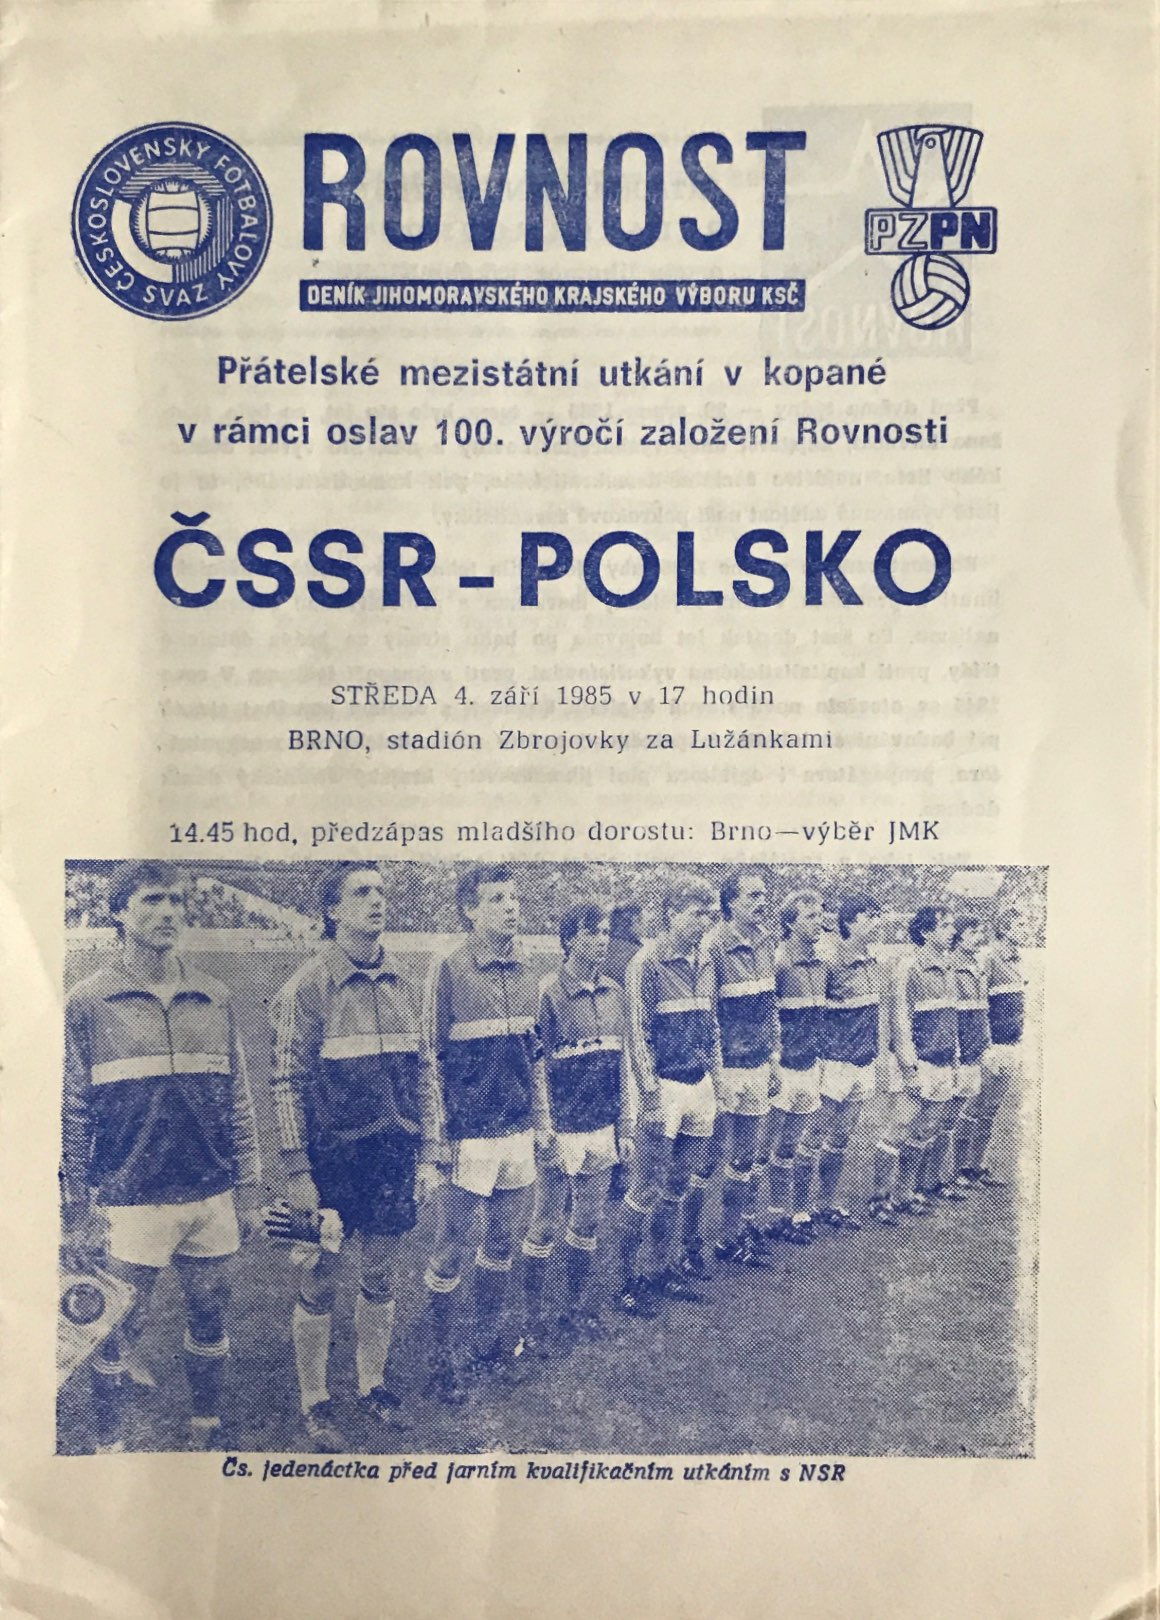 Program meczowy Czechosłowacja - Polska 3:1 (04.09.1985)